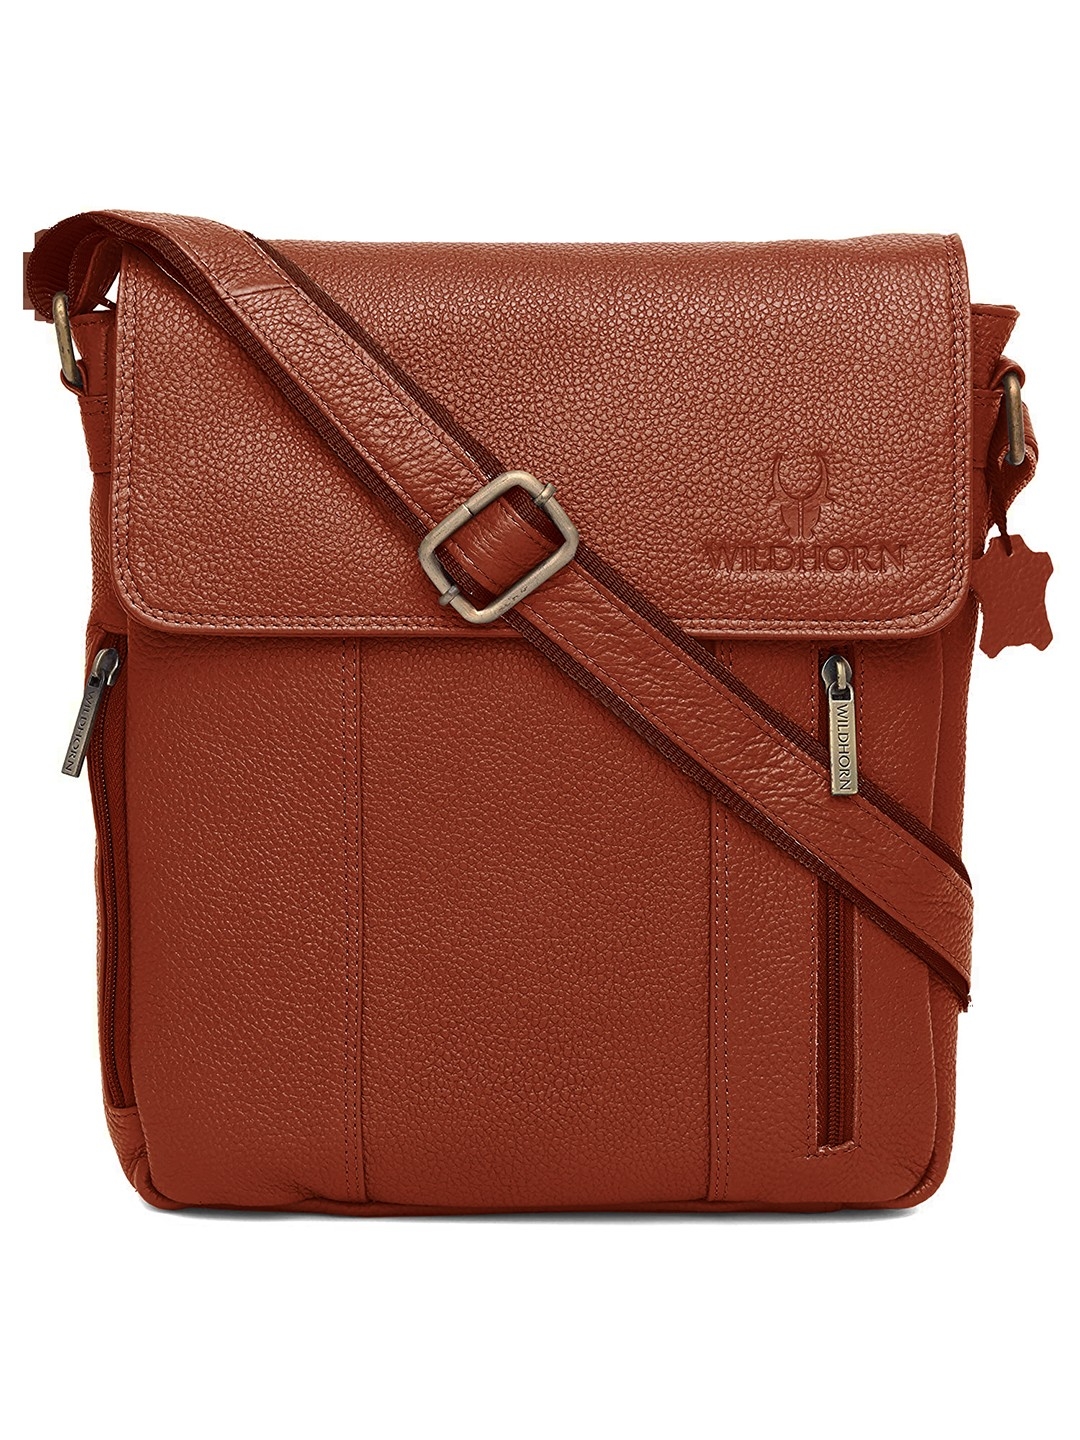 WildHorn | WildHorn Tan Classic Leather Adjustable Strap Sling Bag for Men 